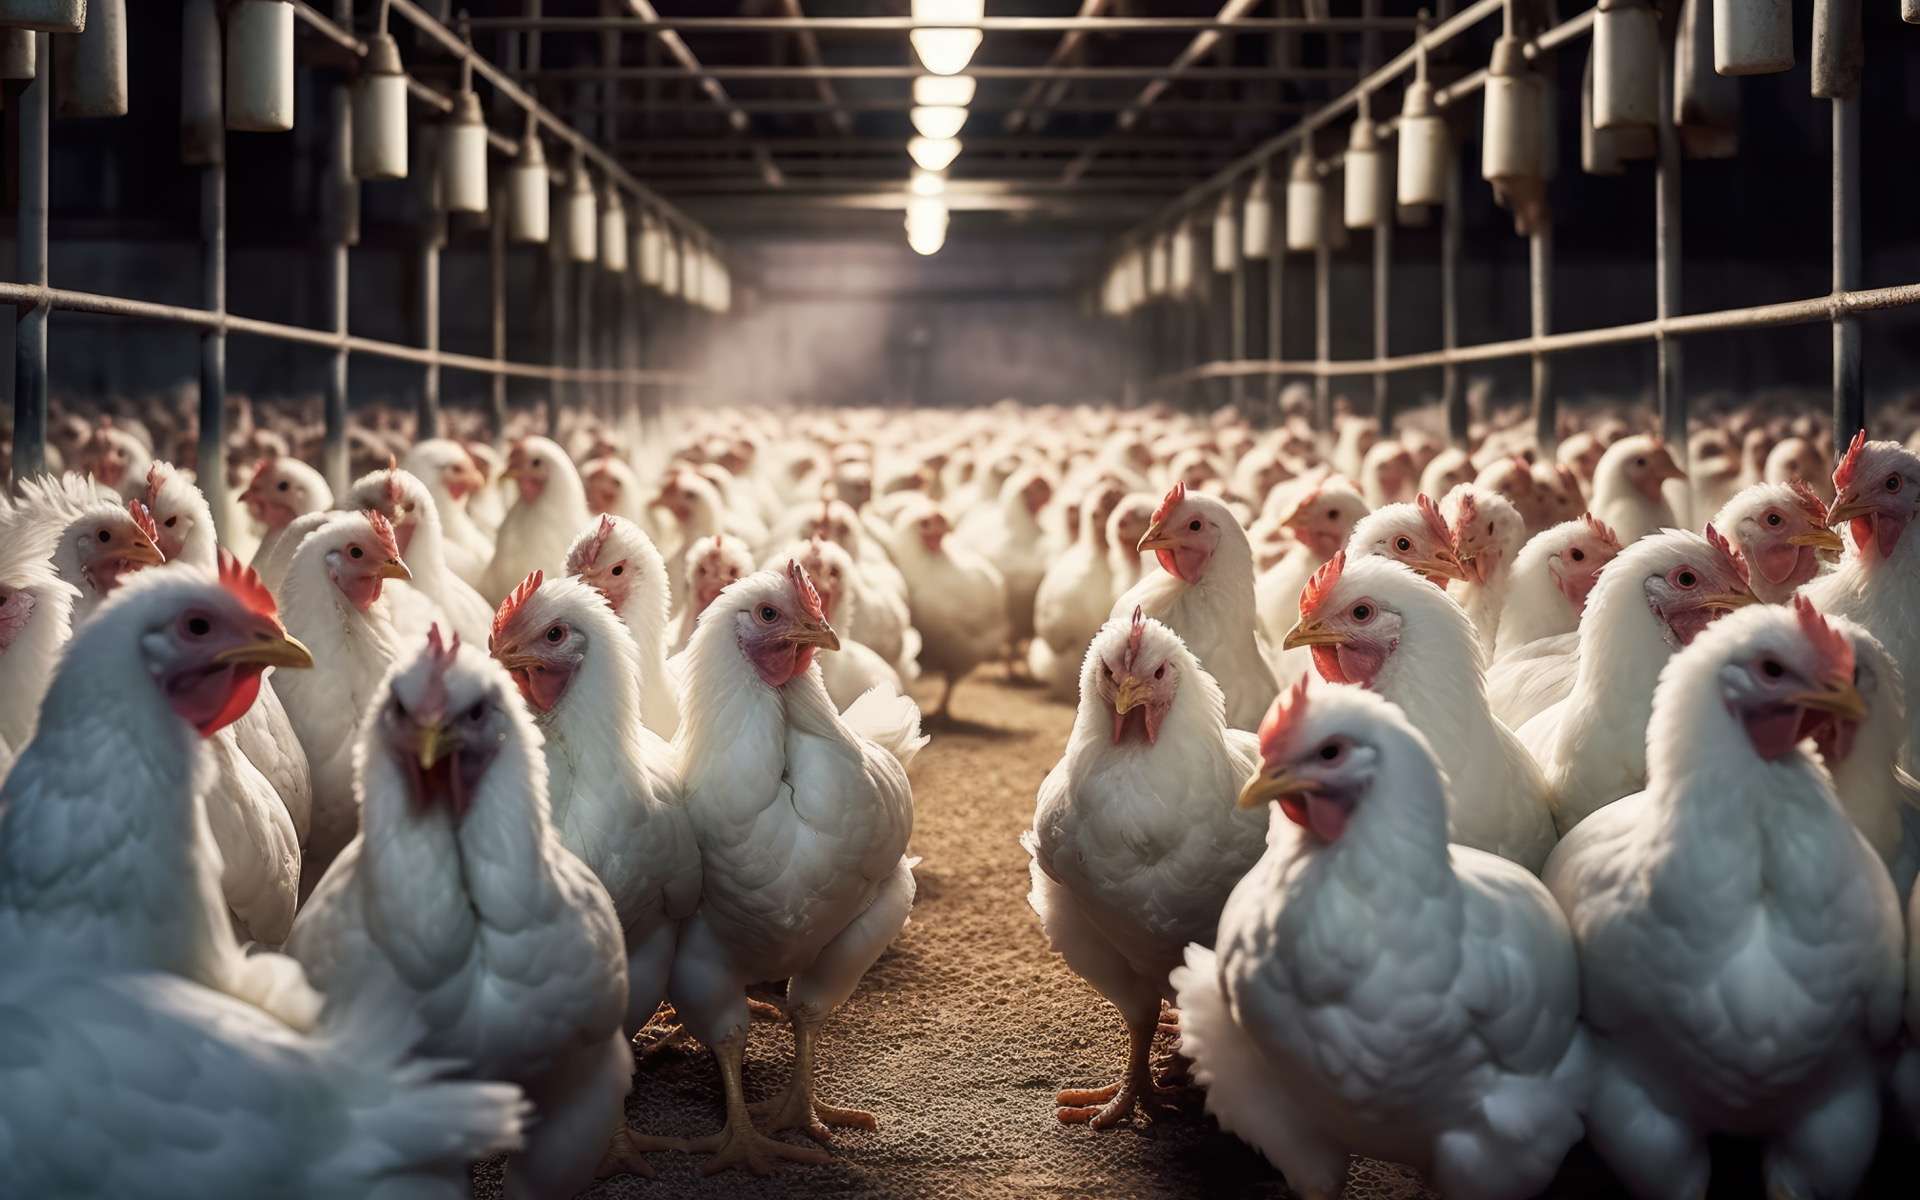 Manger du poulet plutôt que du boeuf : la solution pour sauver le climat, vraiment ?